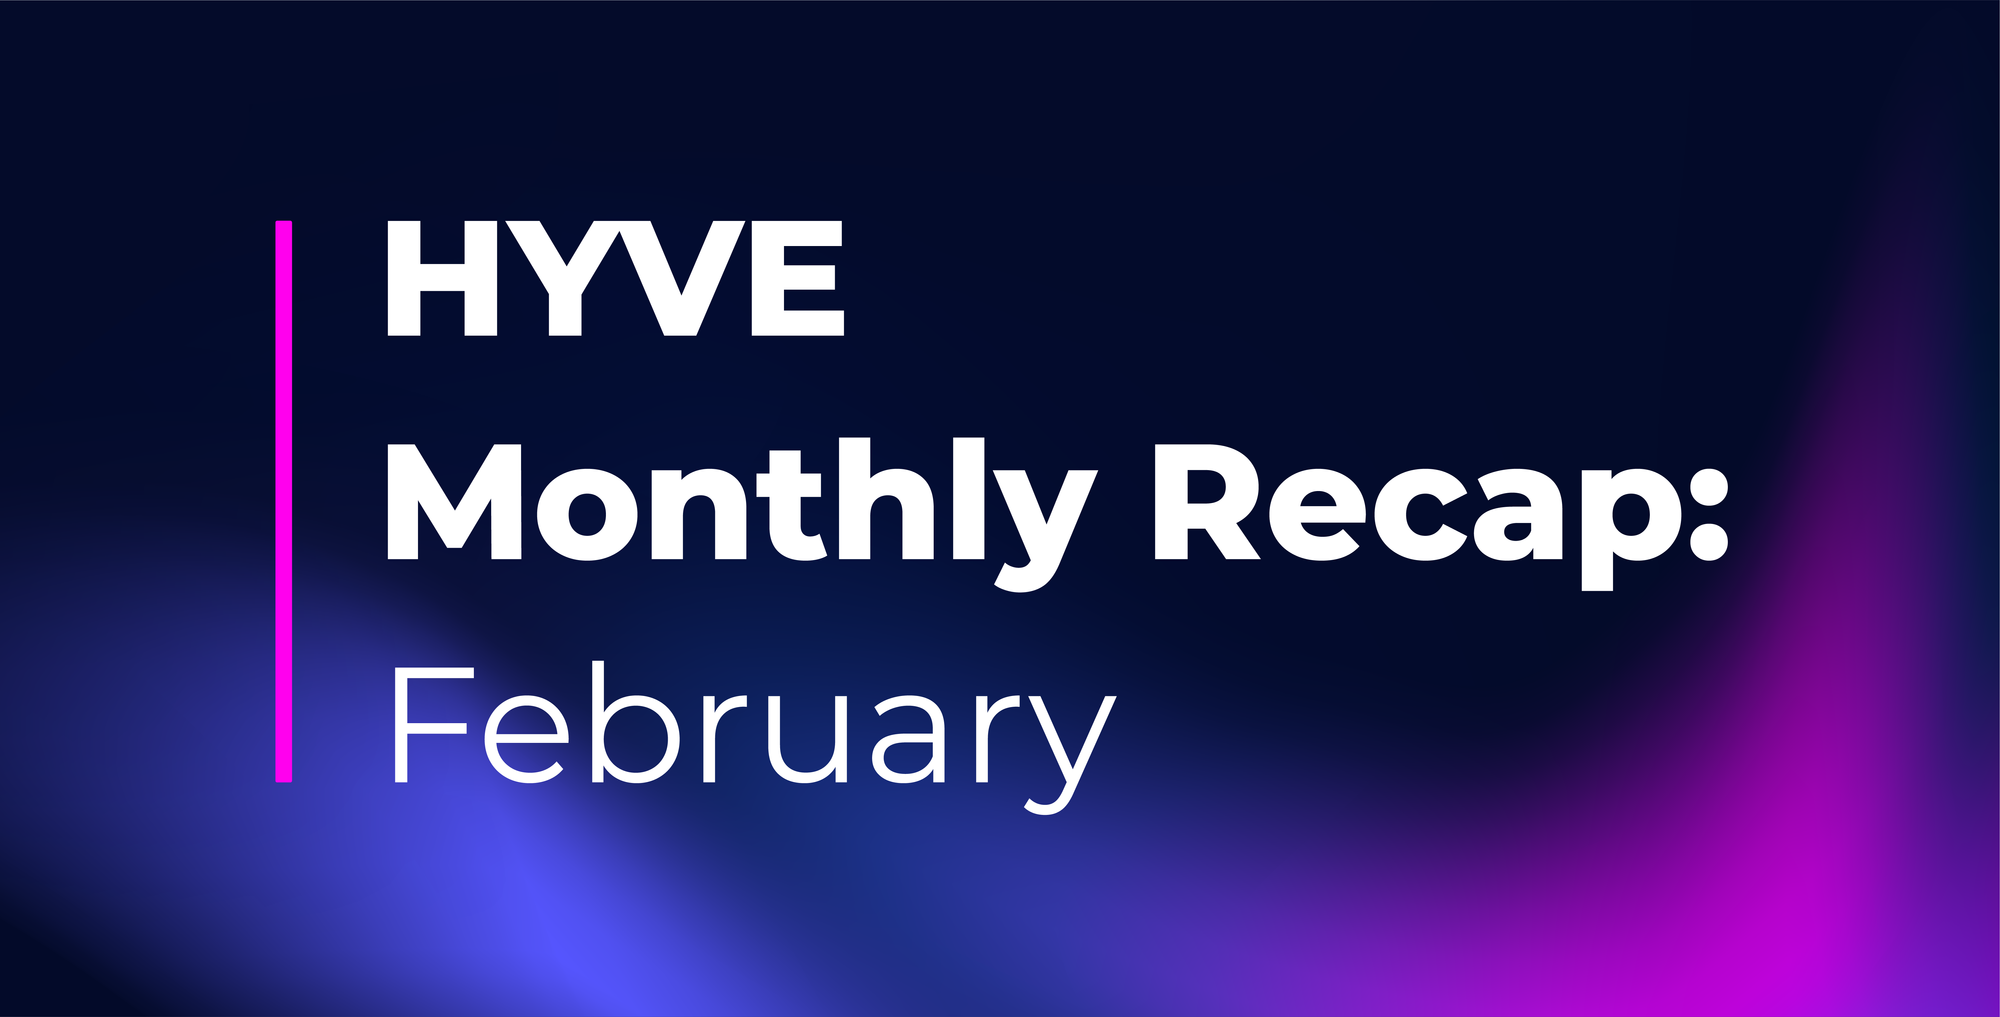 HYVE Monthly Recap: February